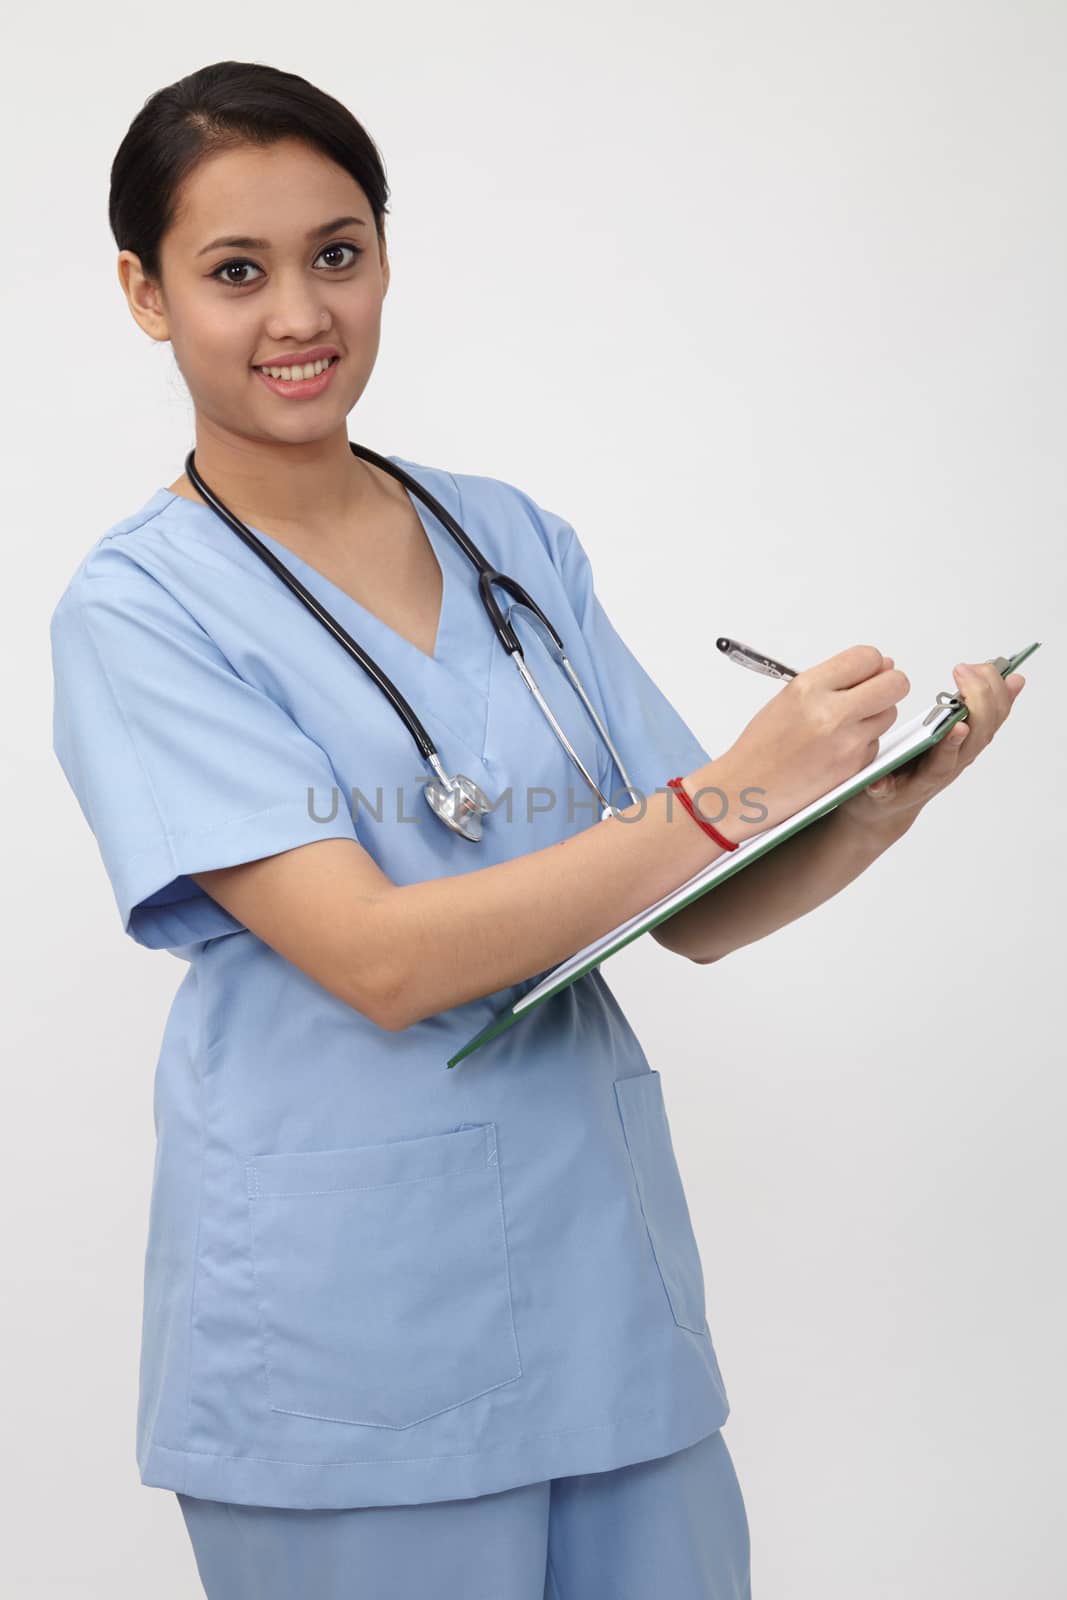 nurse as occupation by eskaylim